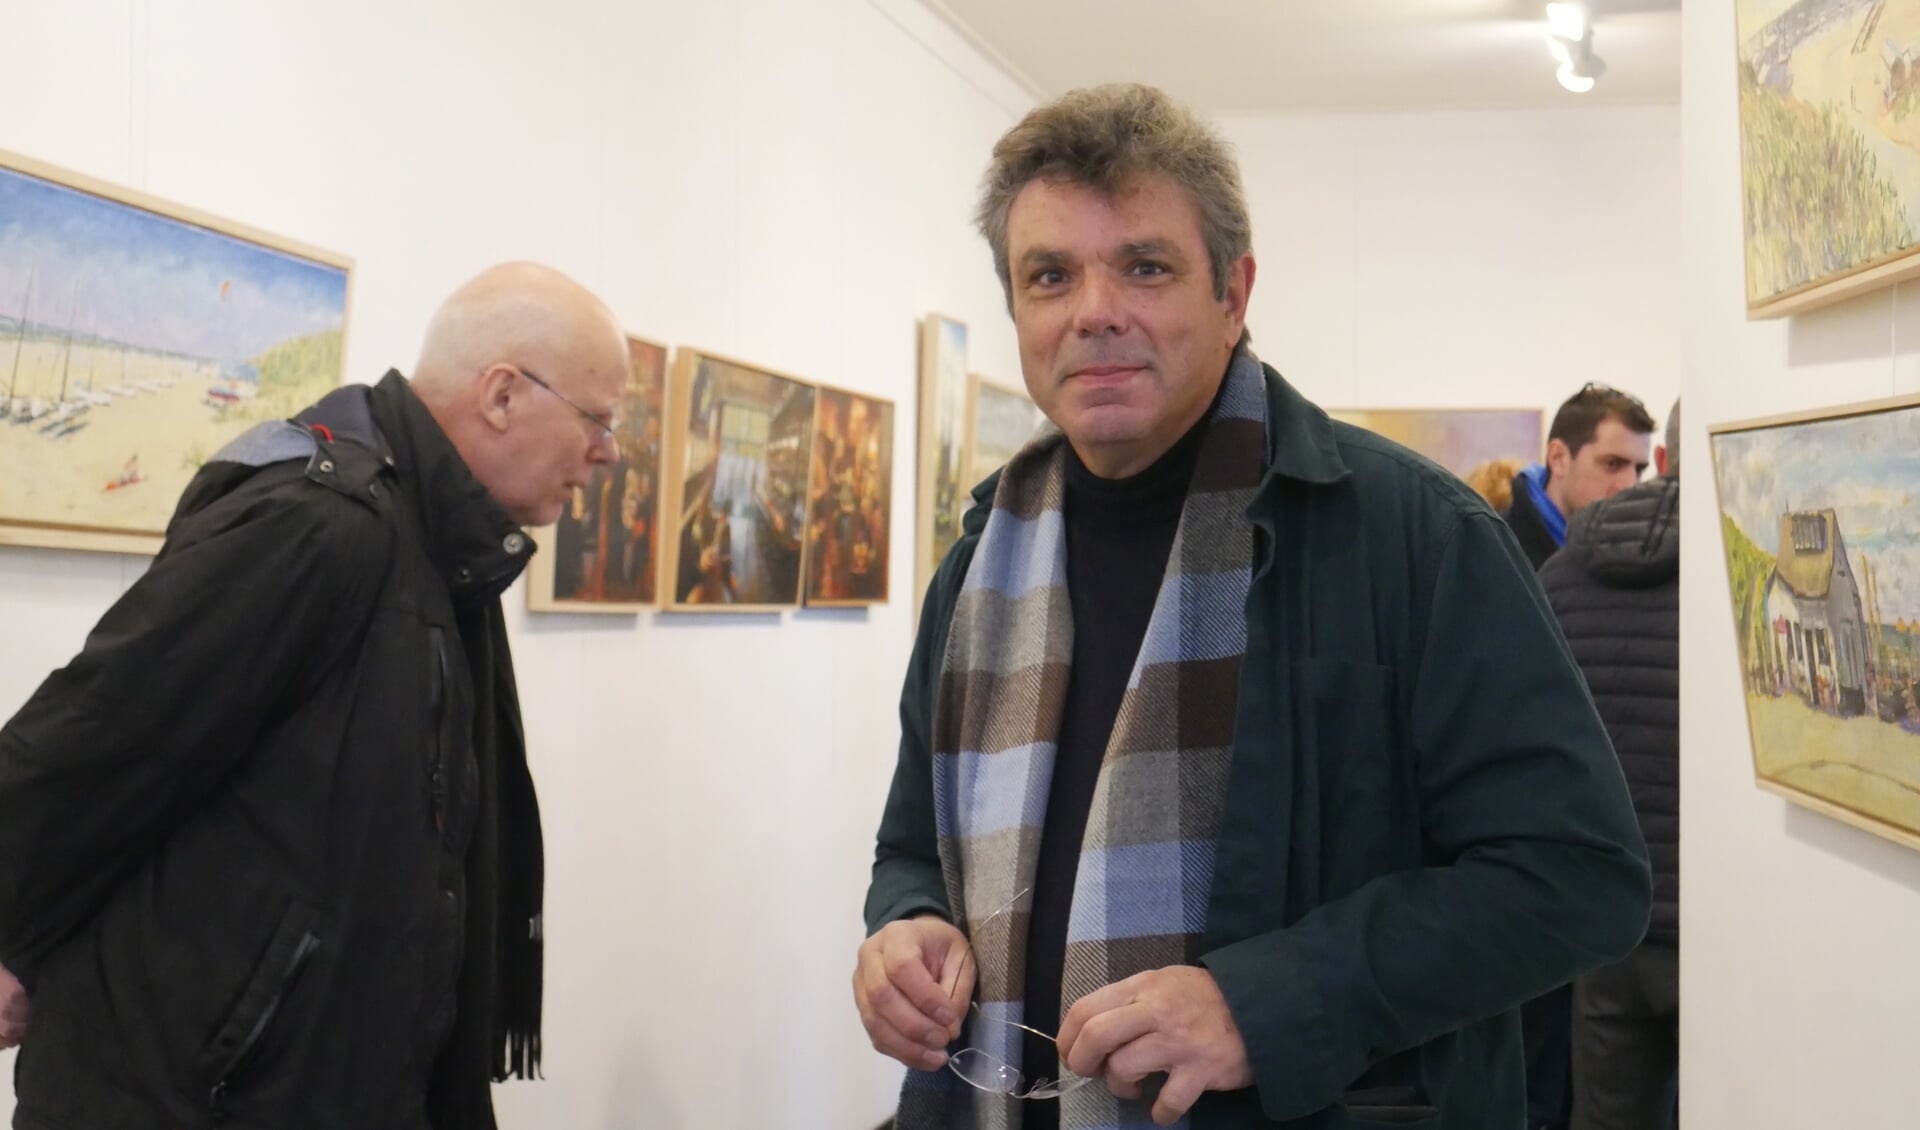 De eerste expositie van Dimitris Voyiazoglou was in 2001; meer dan twintig jaar geleden. Dit is zijn zesde expositie bij Arti-Shock. De meeste werken zijn nieuw.